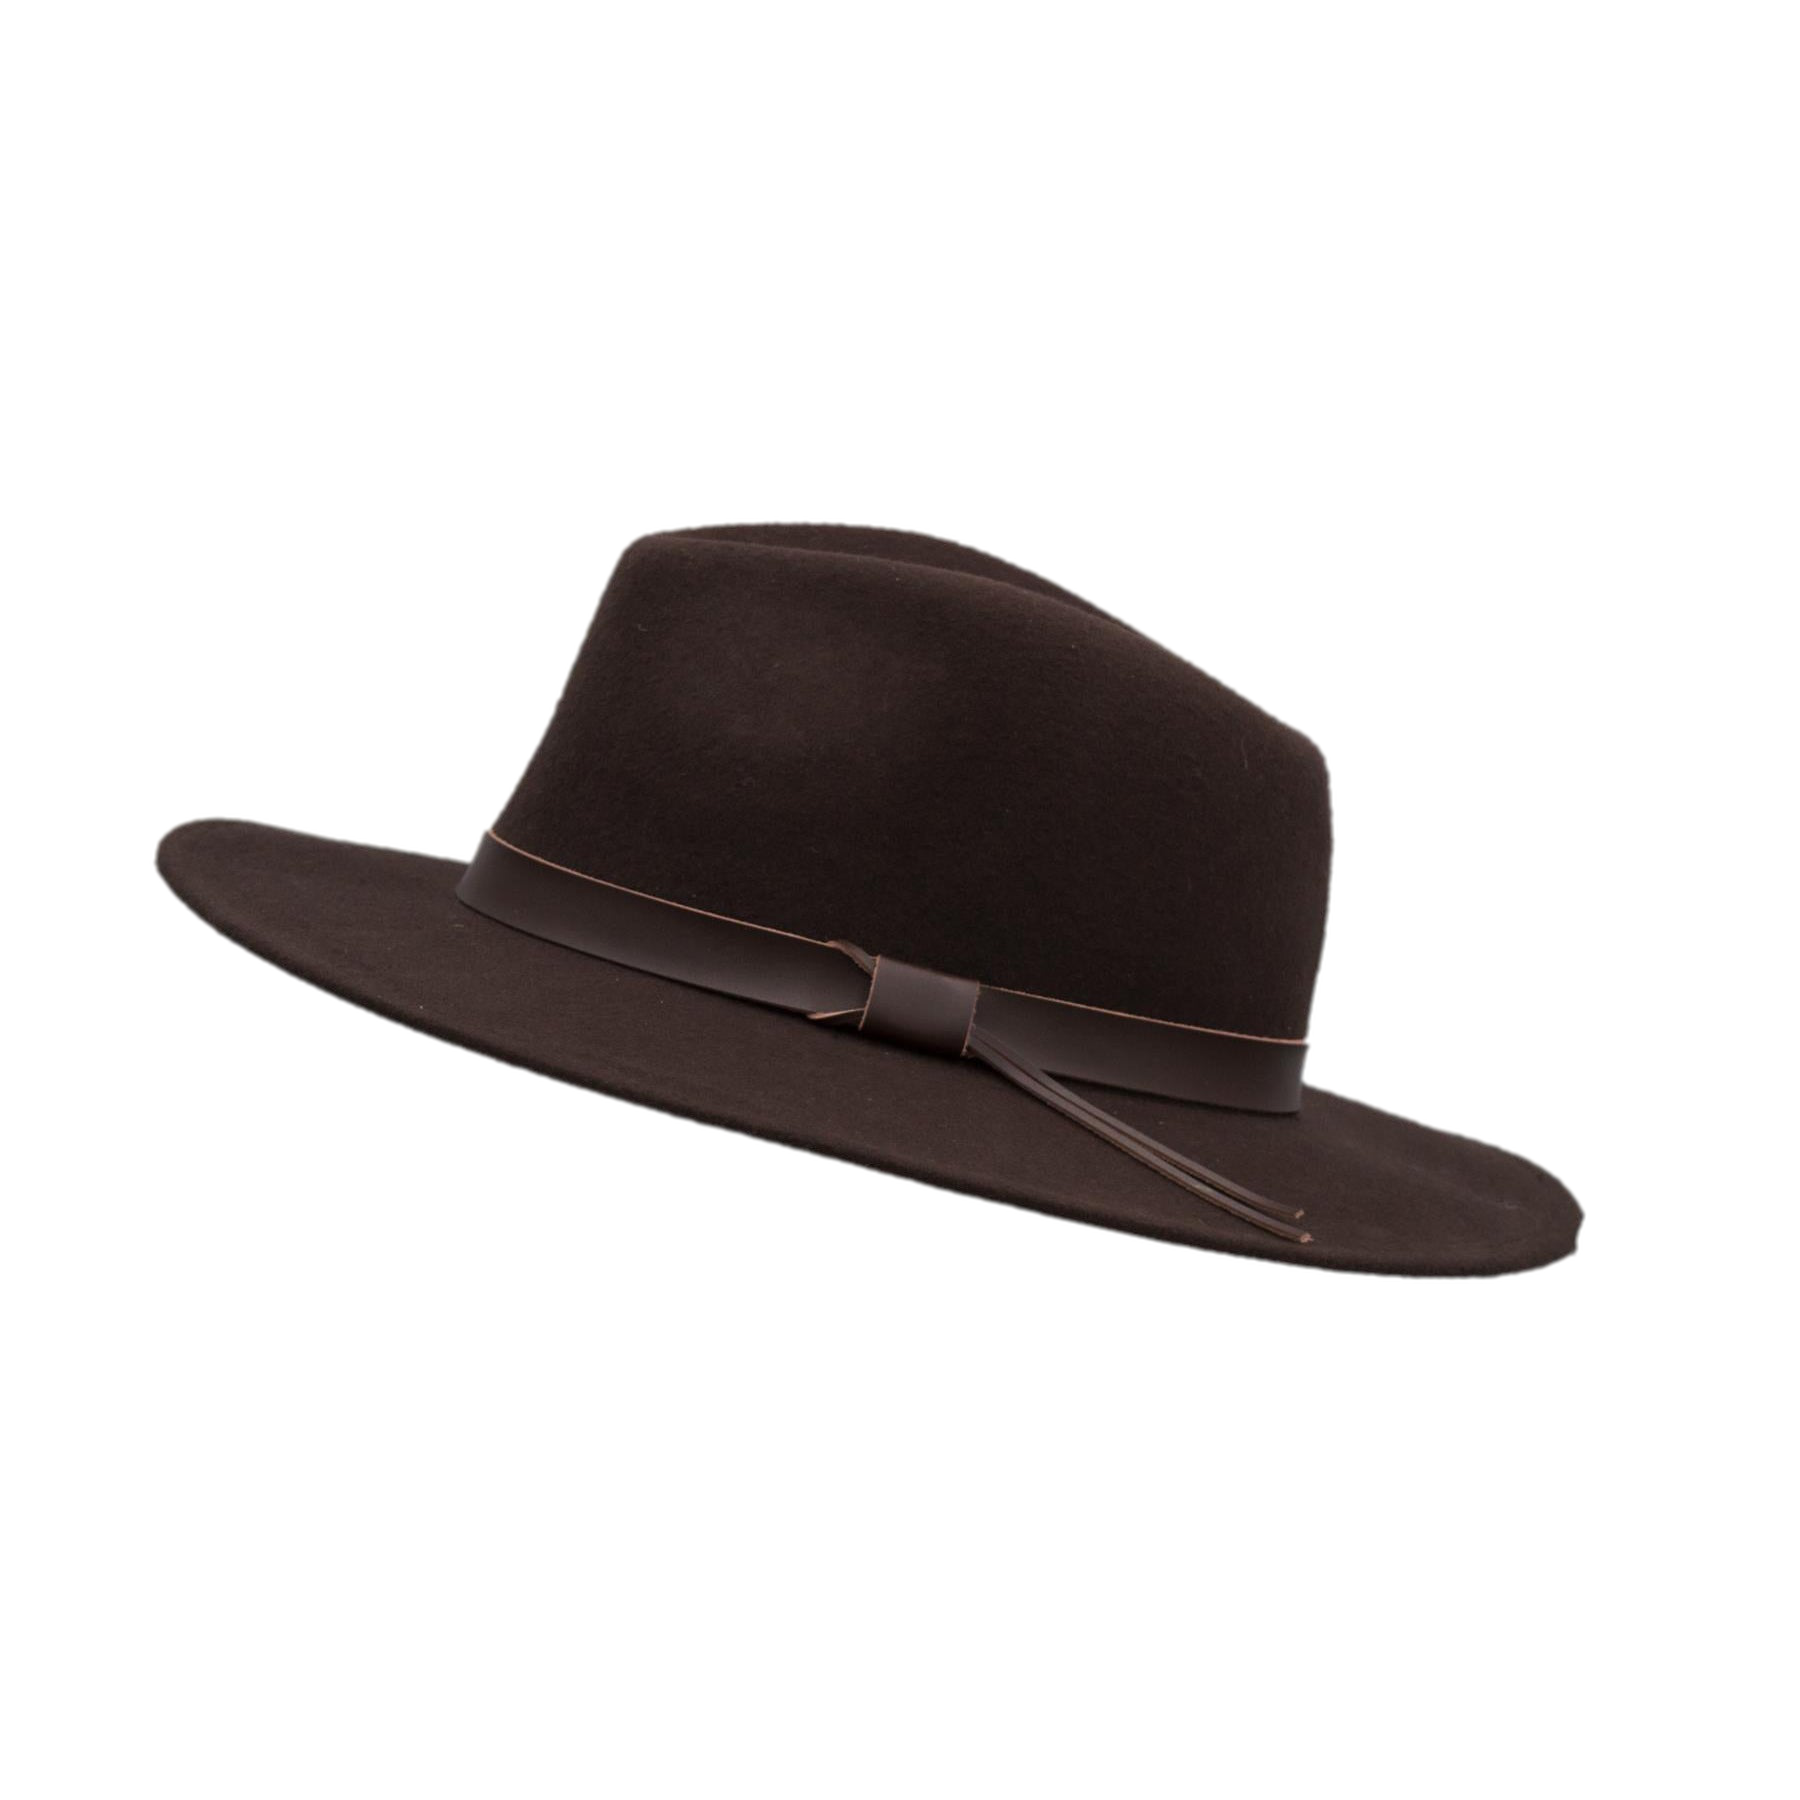 Ranger Fedora Crushable Felt Hat With Leather Trim